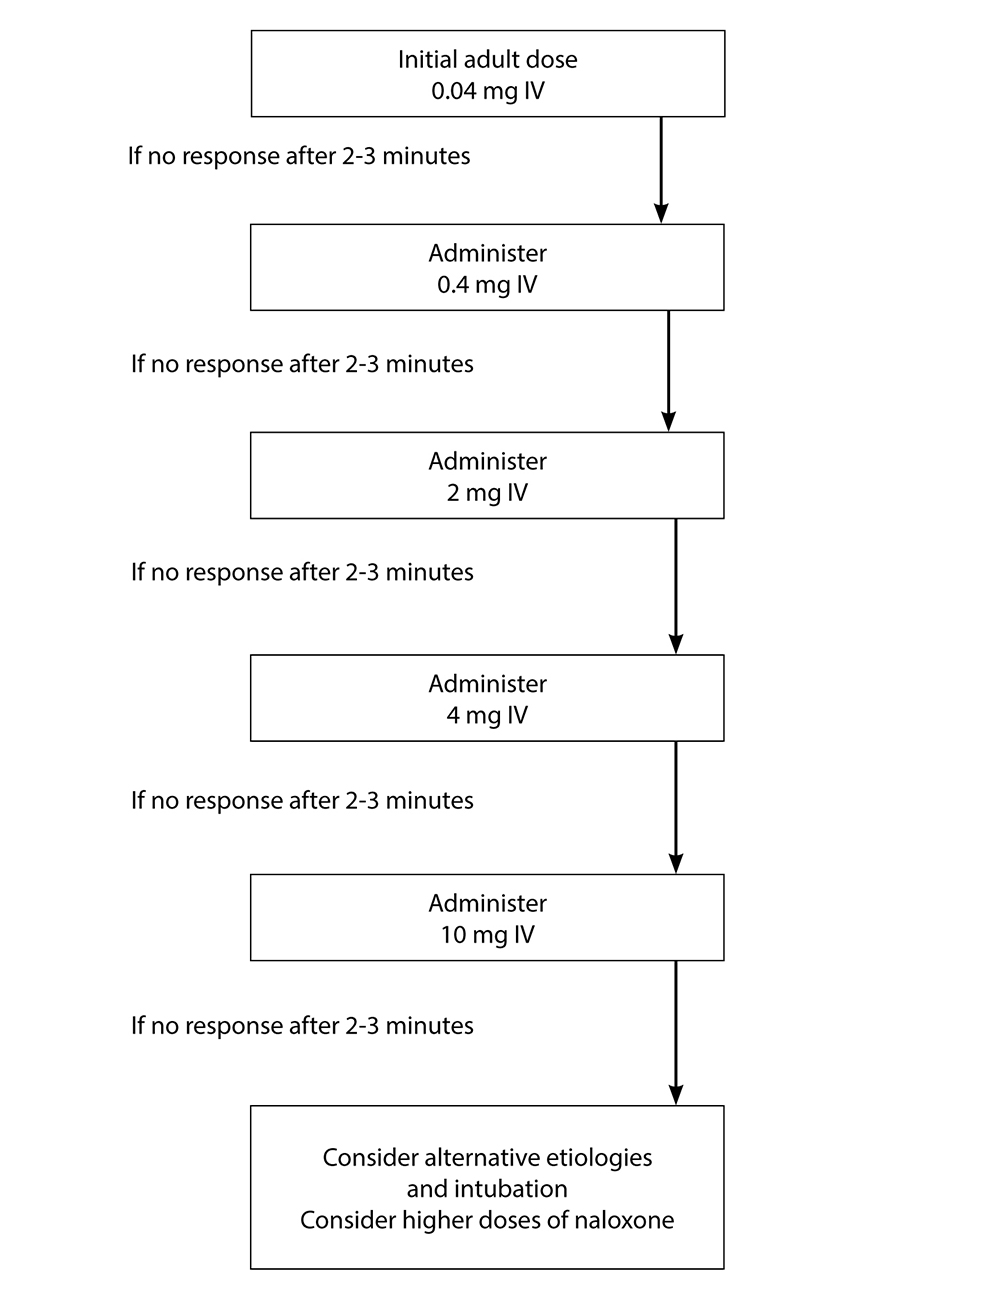 Sample algorithm for escalating doses of naloxone